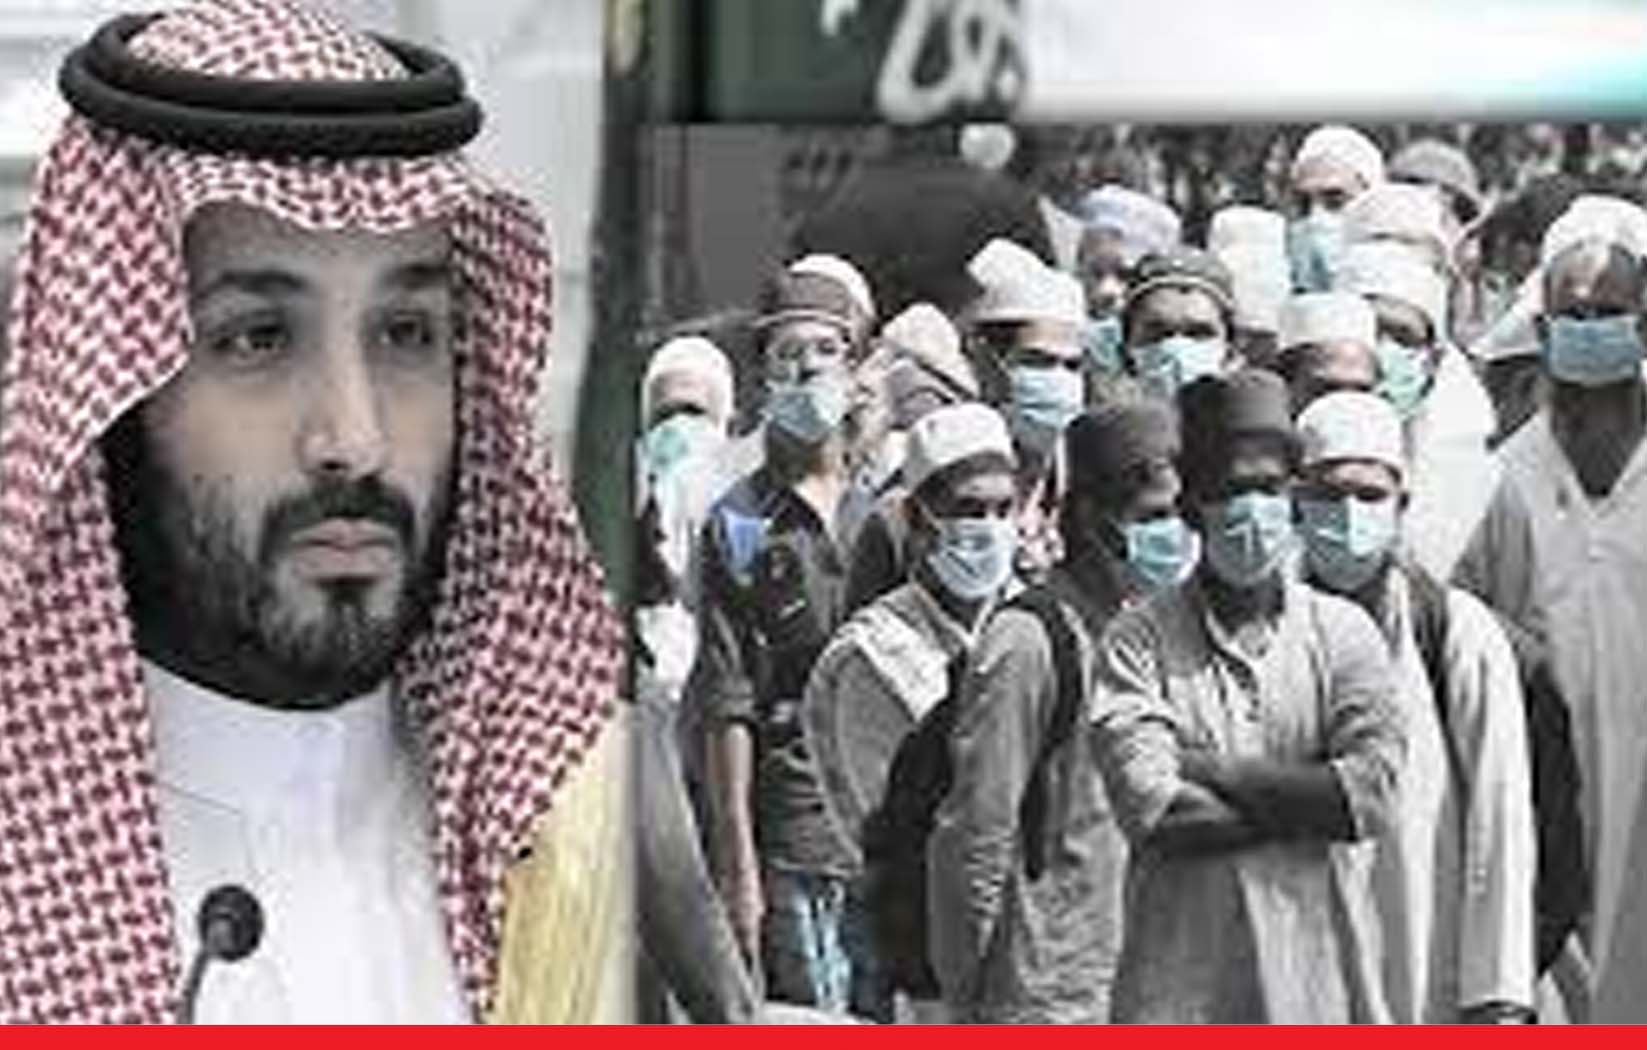 सऊदी अरब ने तब्लीगी जमात पर लगाया बैन, संगठन को बताया आतंकवाद का दरवाजा